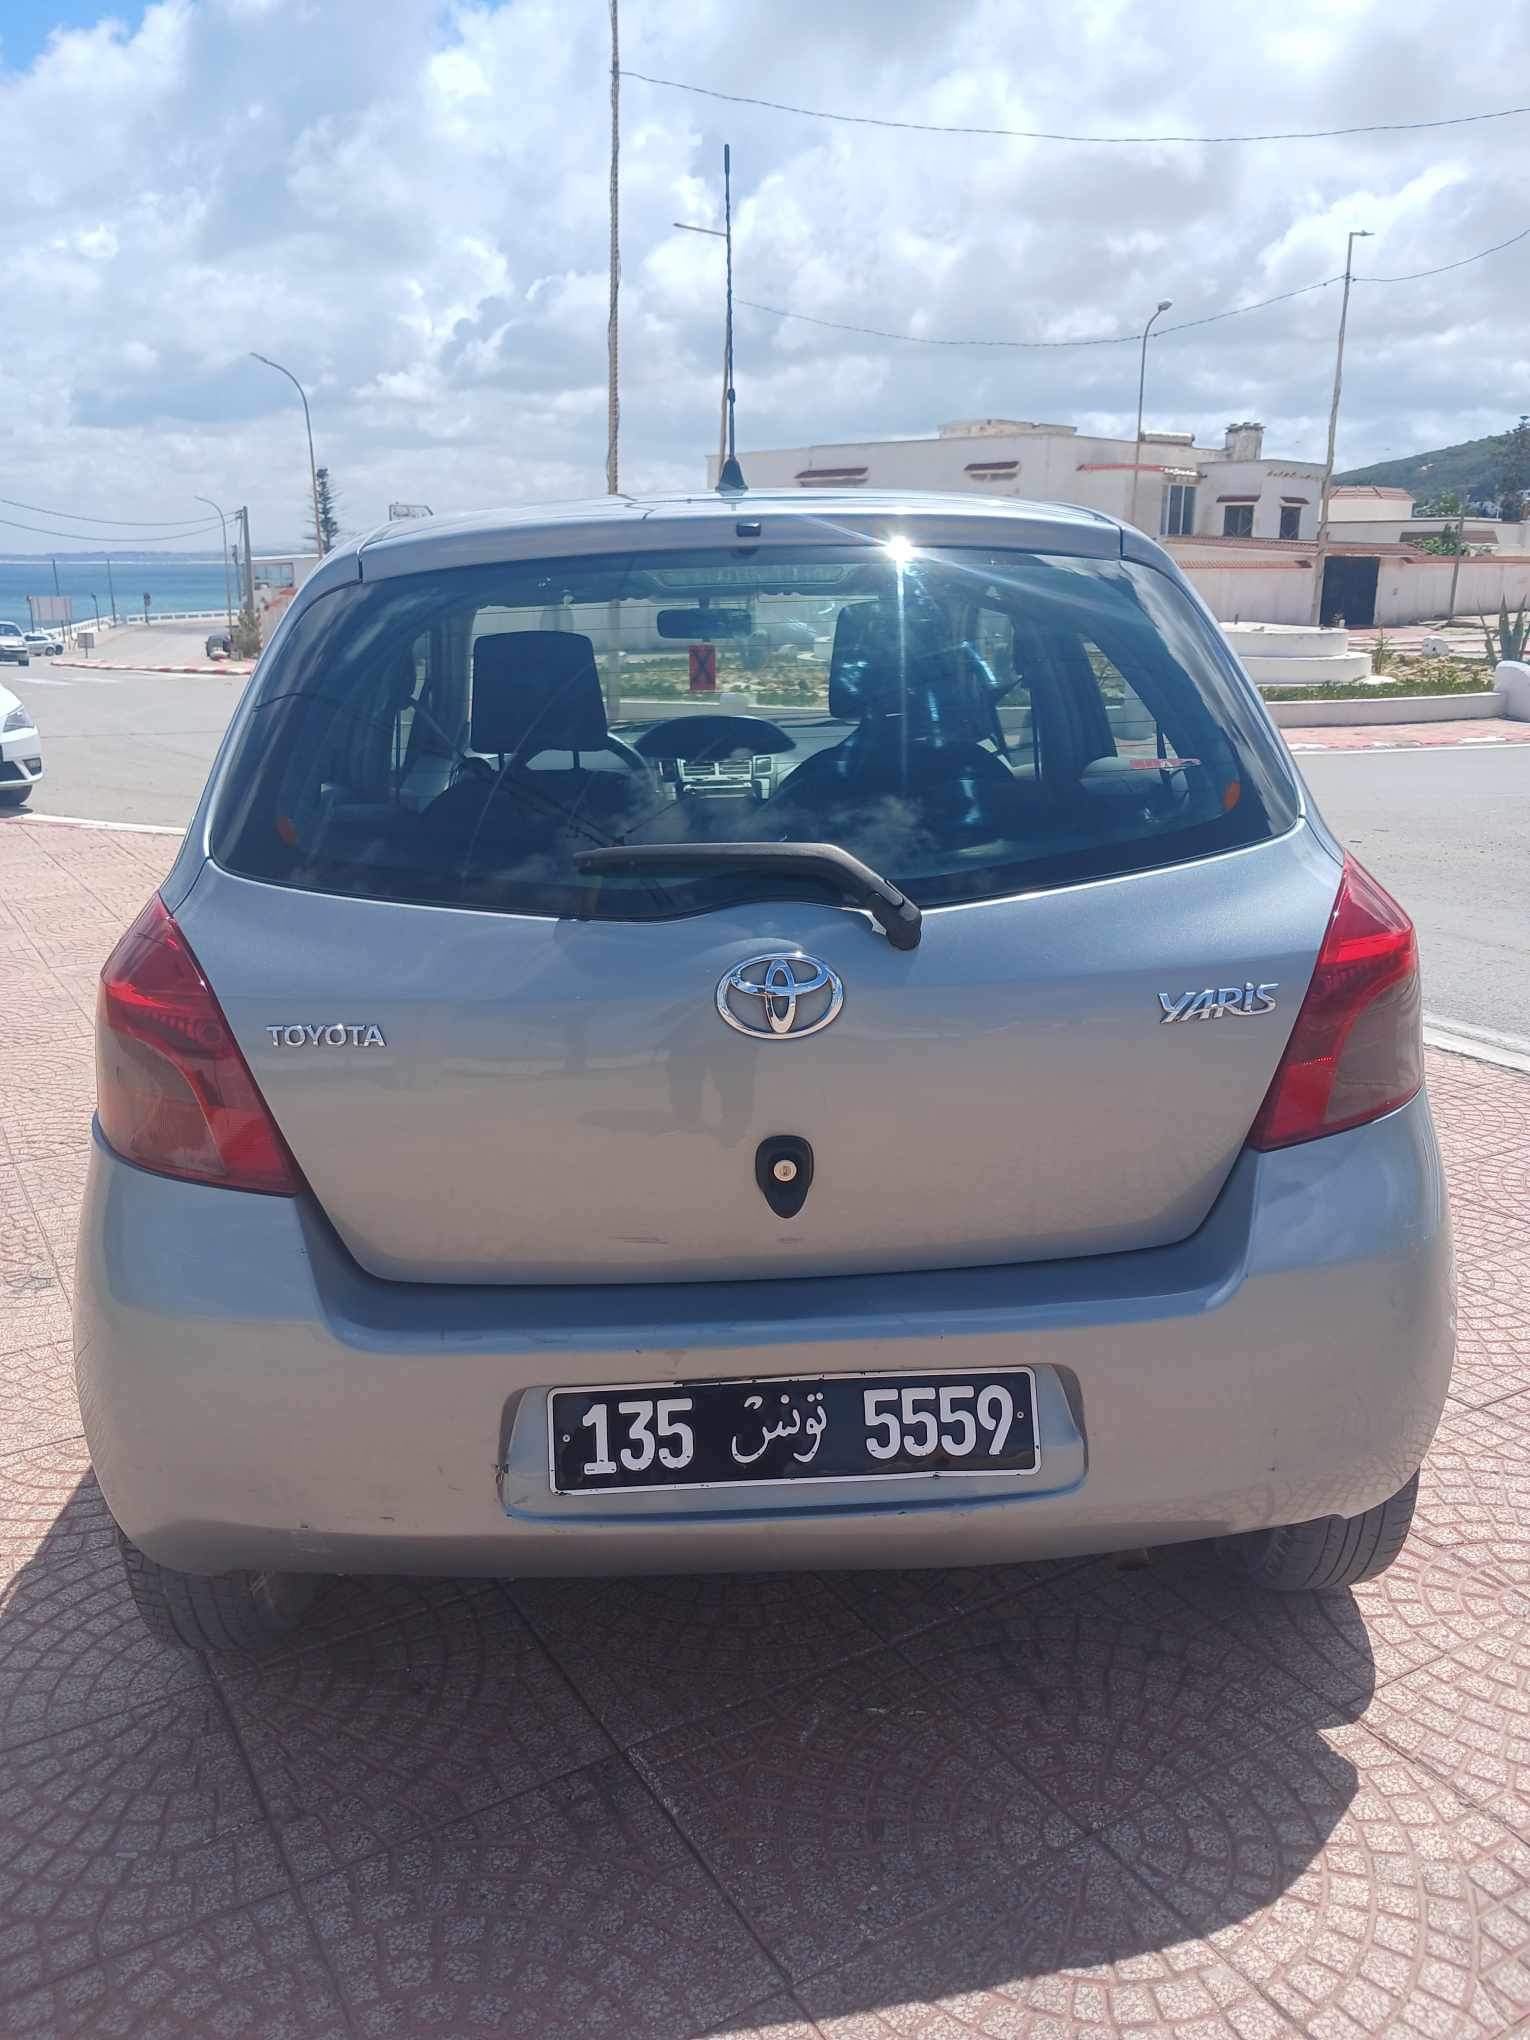 Toyota Yaris - Tunisie